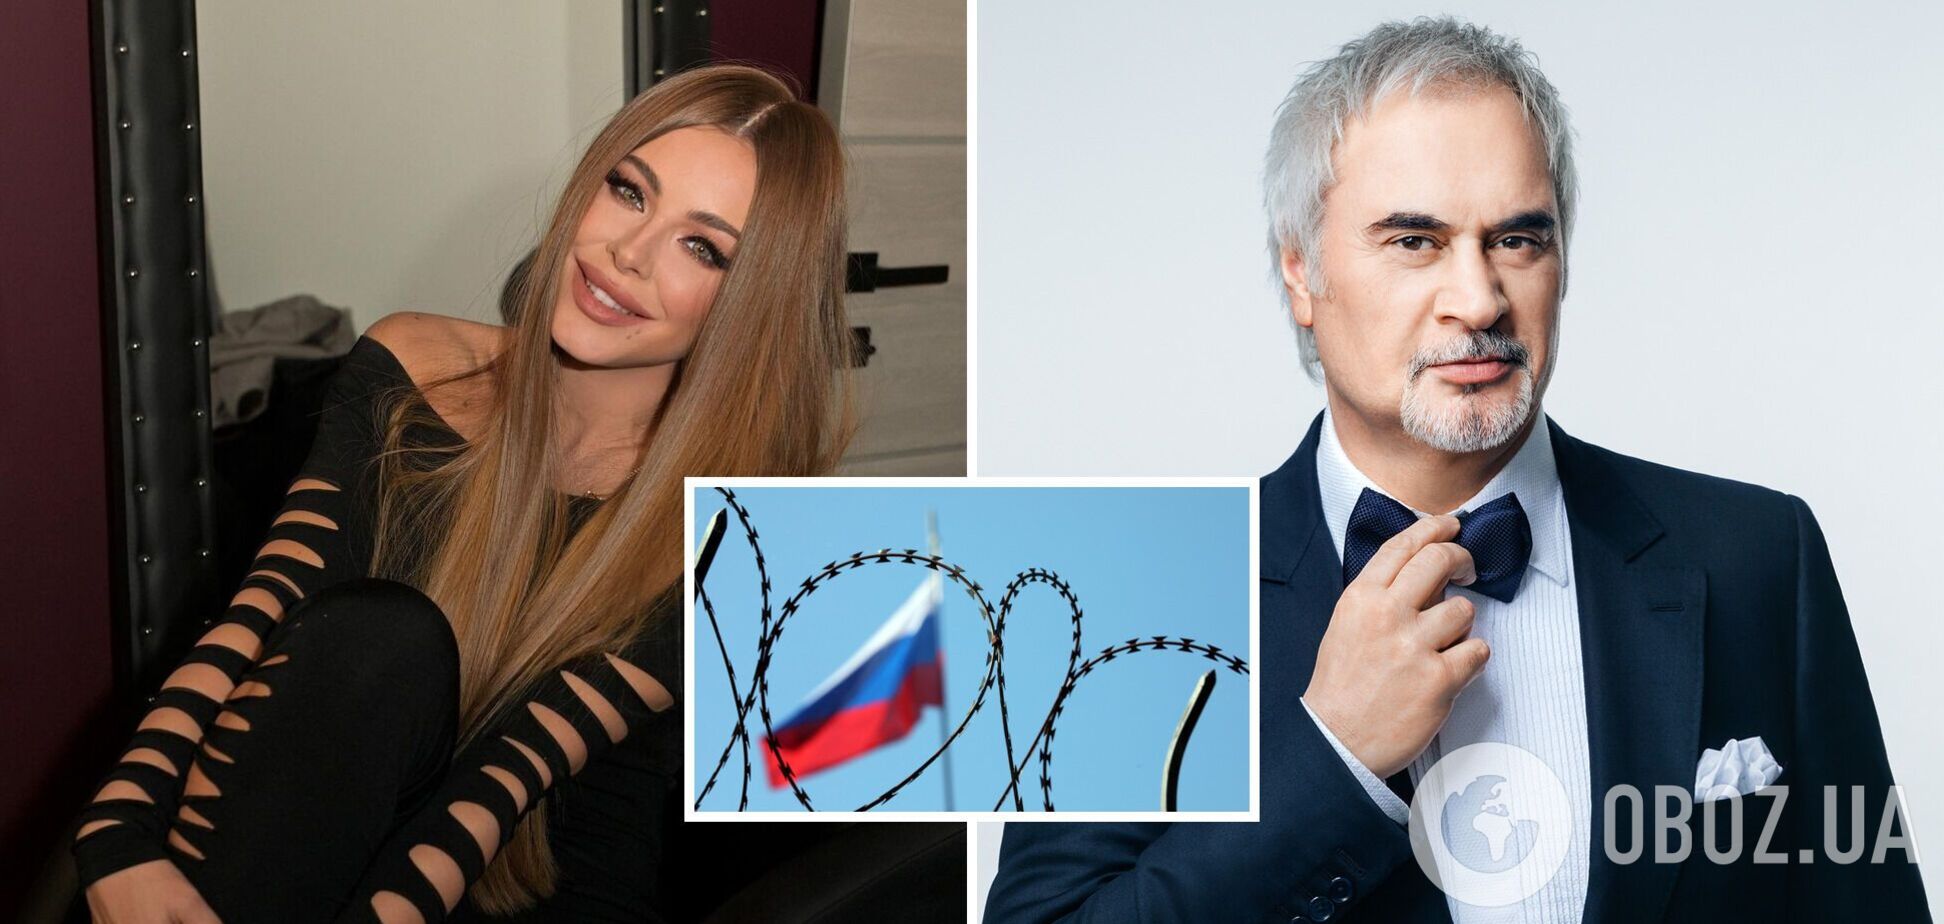 Одна 'донатит на ВСУ', второй – 'предатель': в России массово отменяют концерты Ани Лорак и Меладзе